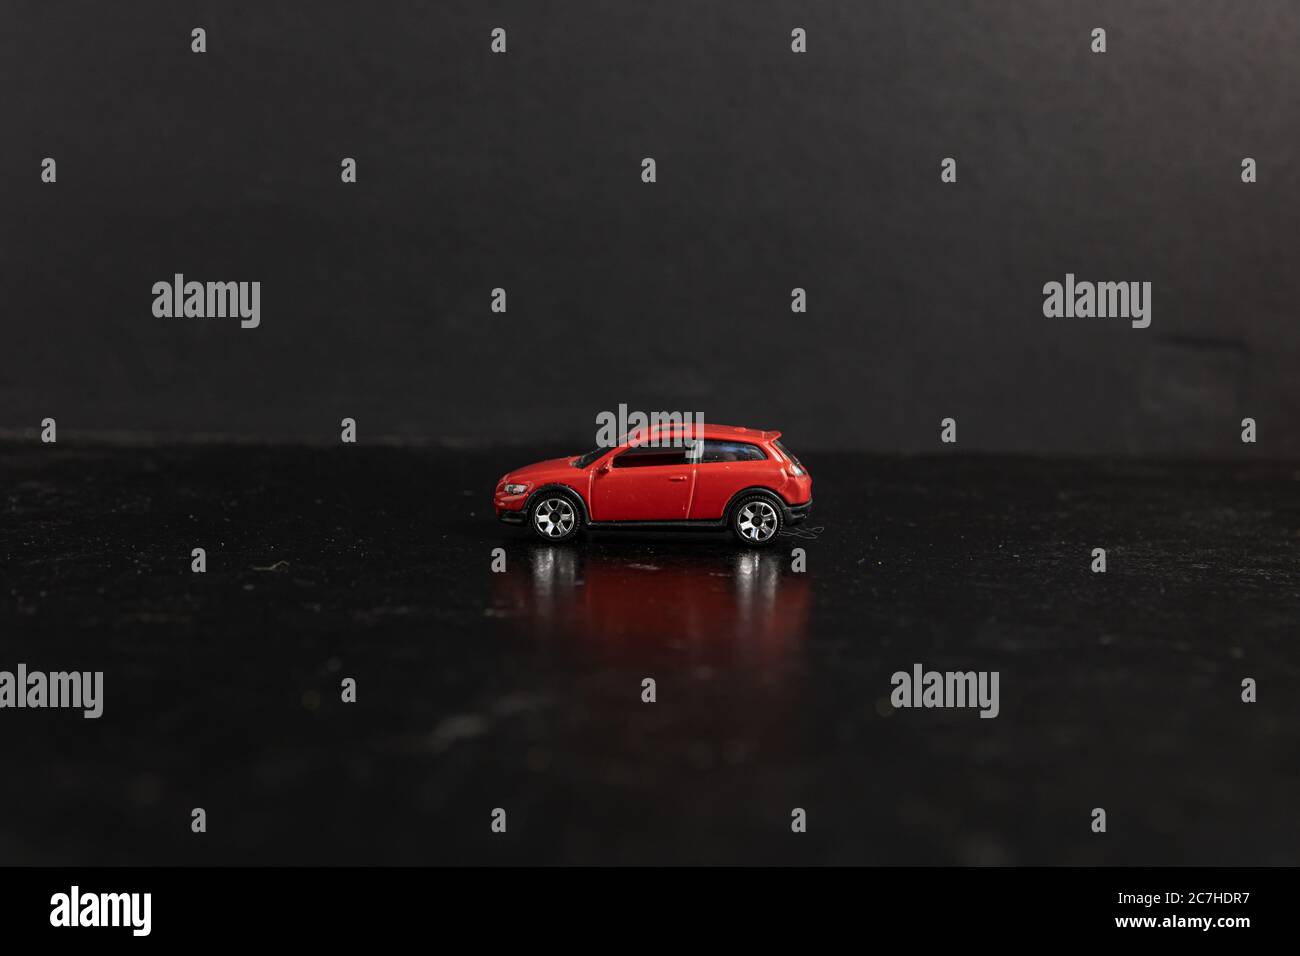 Selektive Fokusaufnahme eines roten Spielzeugautos auf einem Schwarze Oberfläche Stockfoto